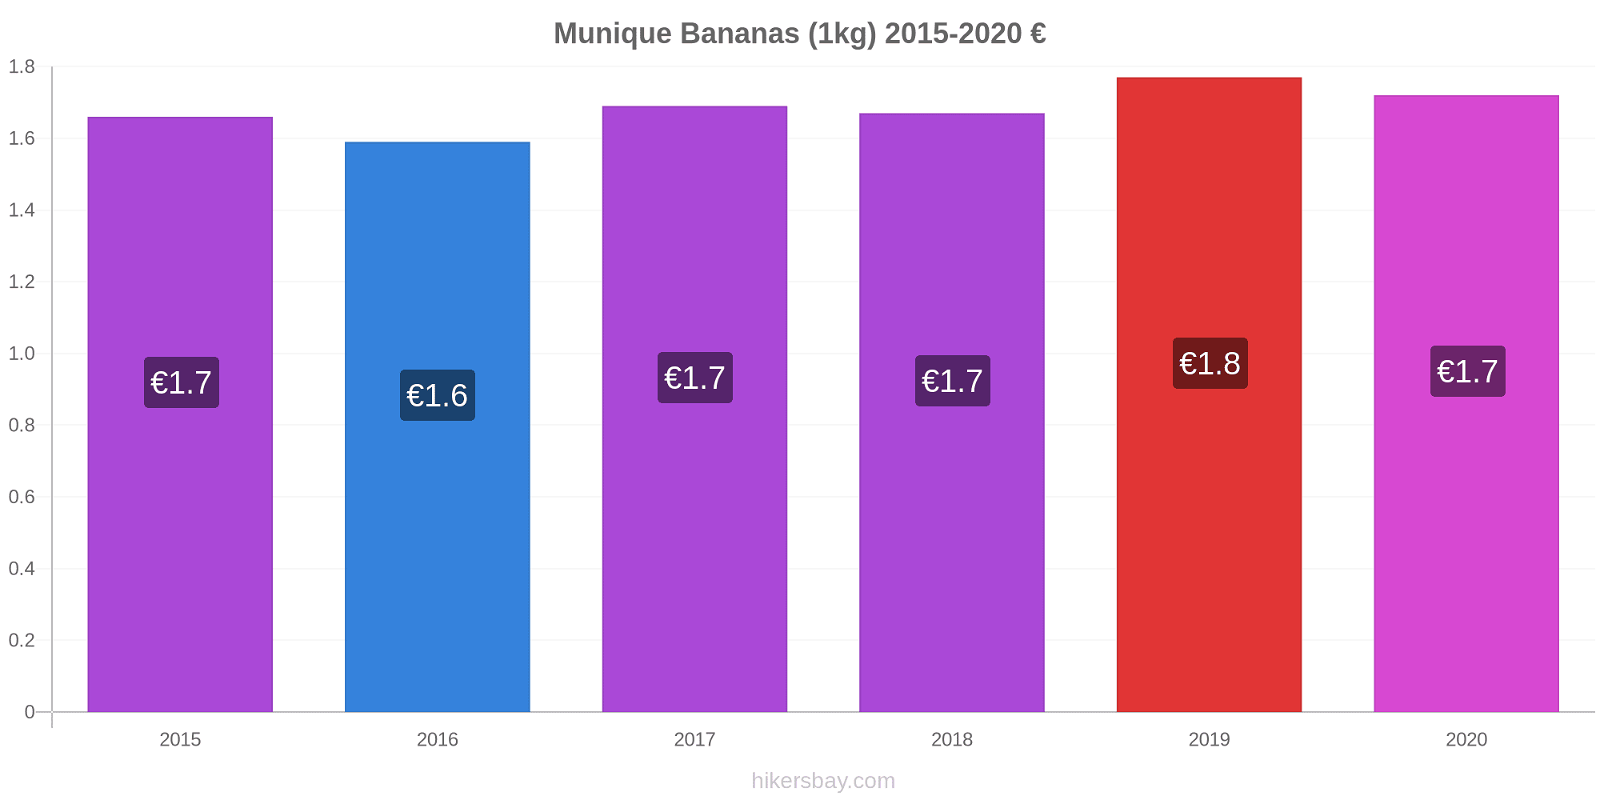 Munique variação de preço Banana (1kg) hikersbay.com